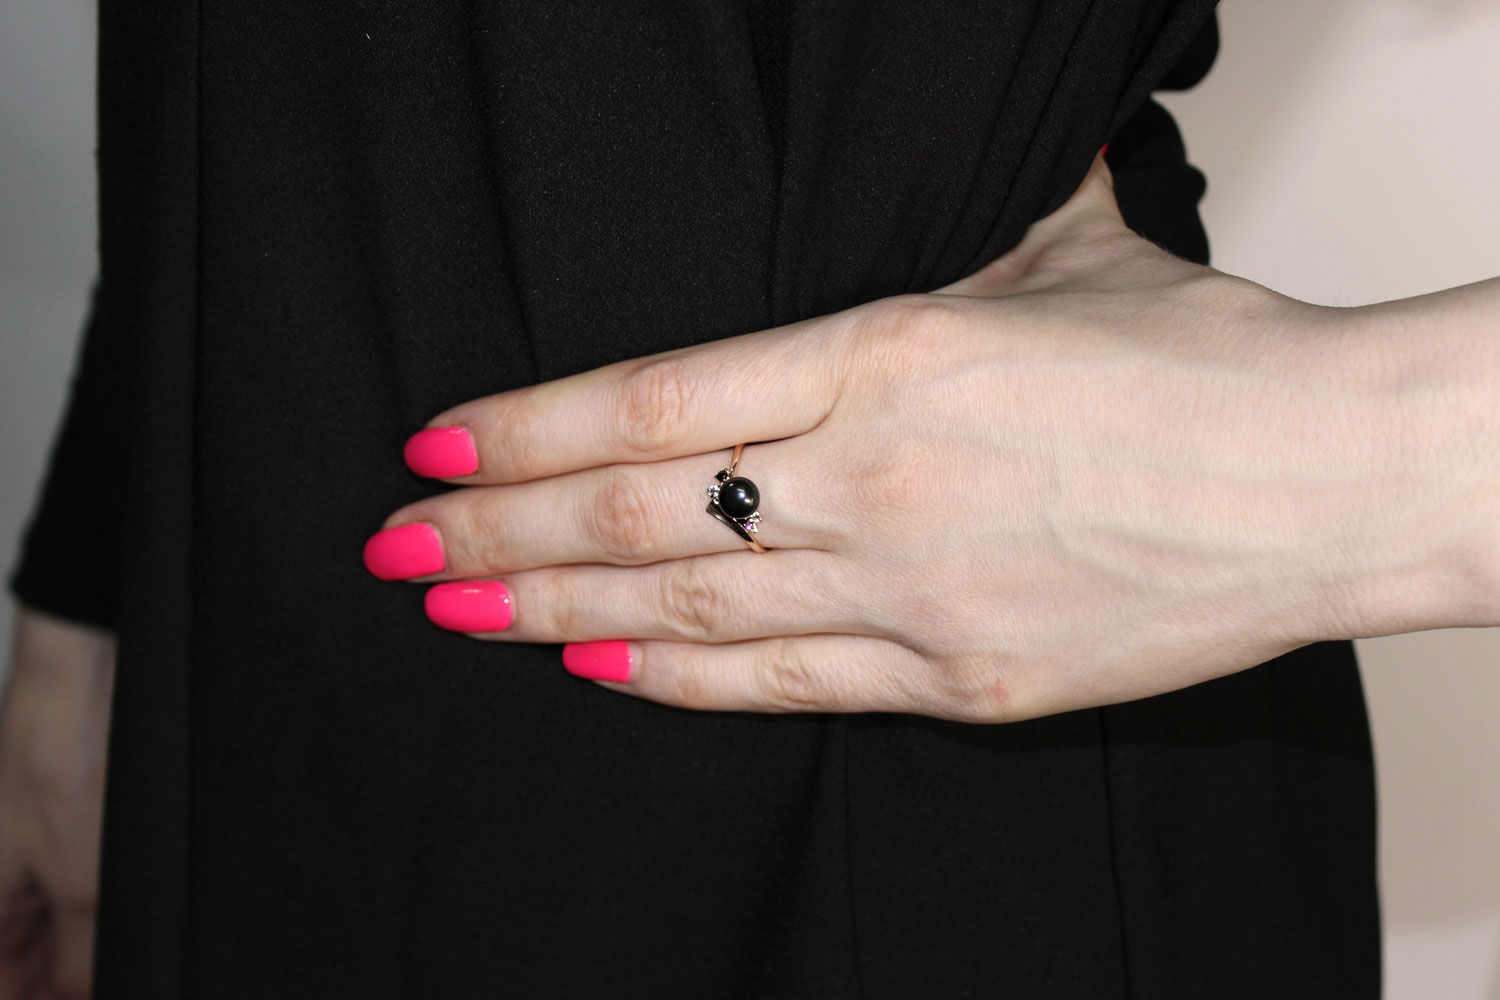 Золотое кольцо SOKOLOV 791139 с черным жемчугом, фианитами — купить в AllTime.ru — фото